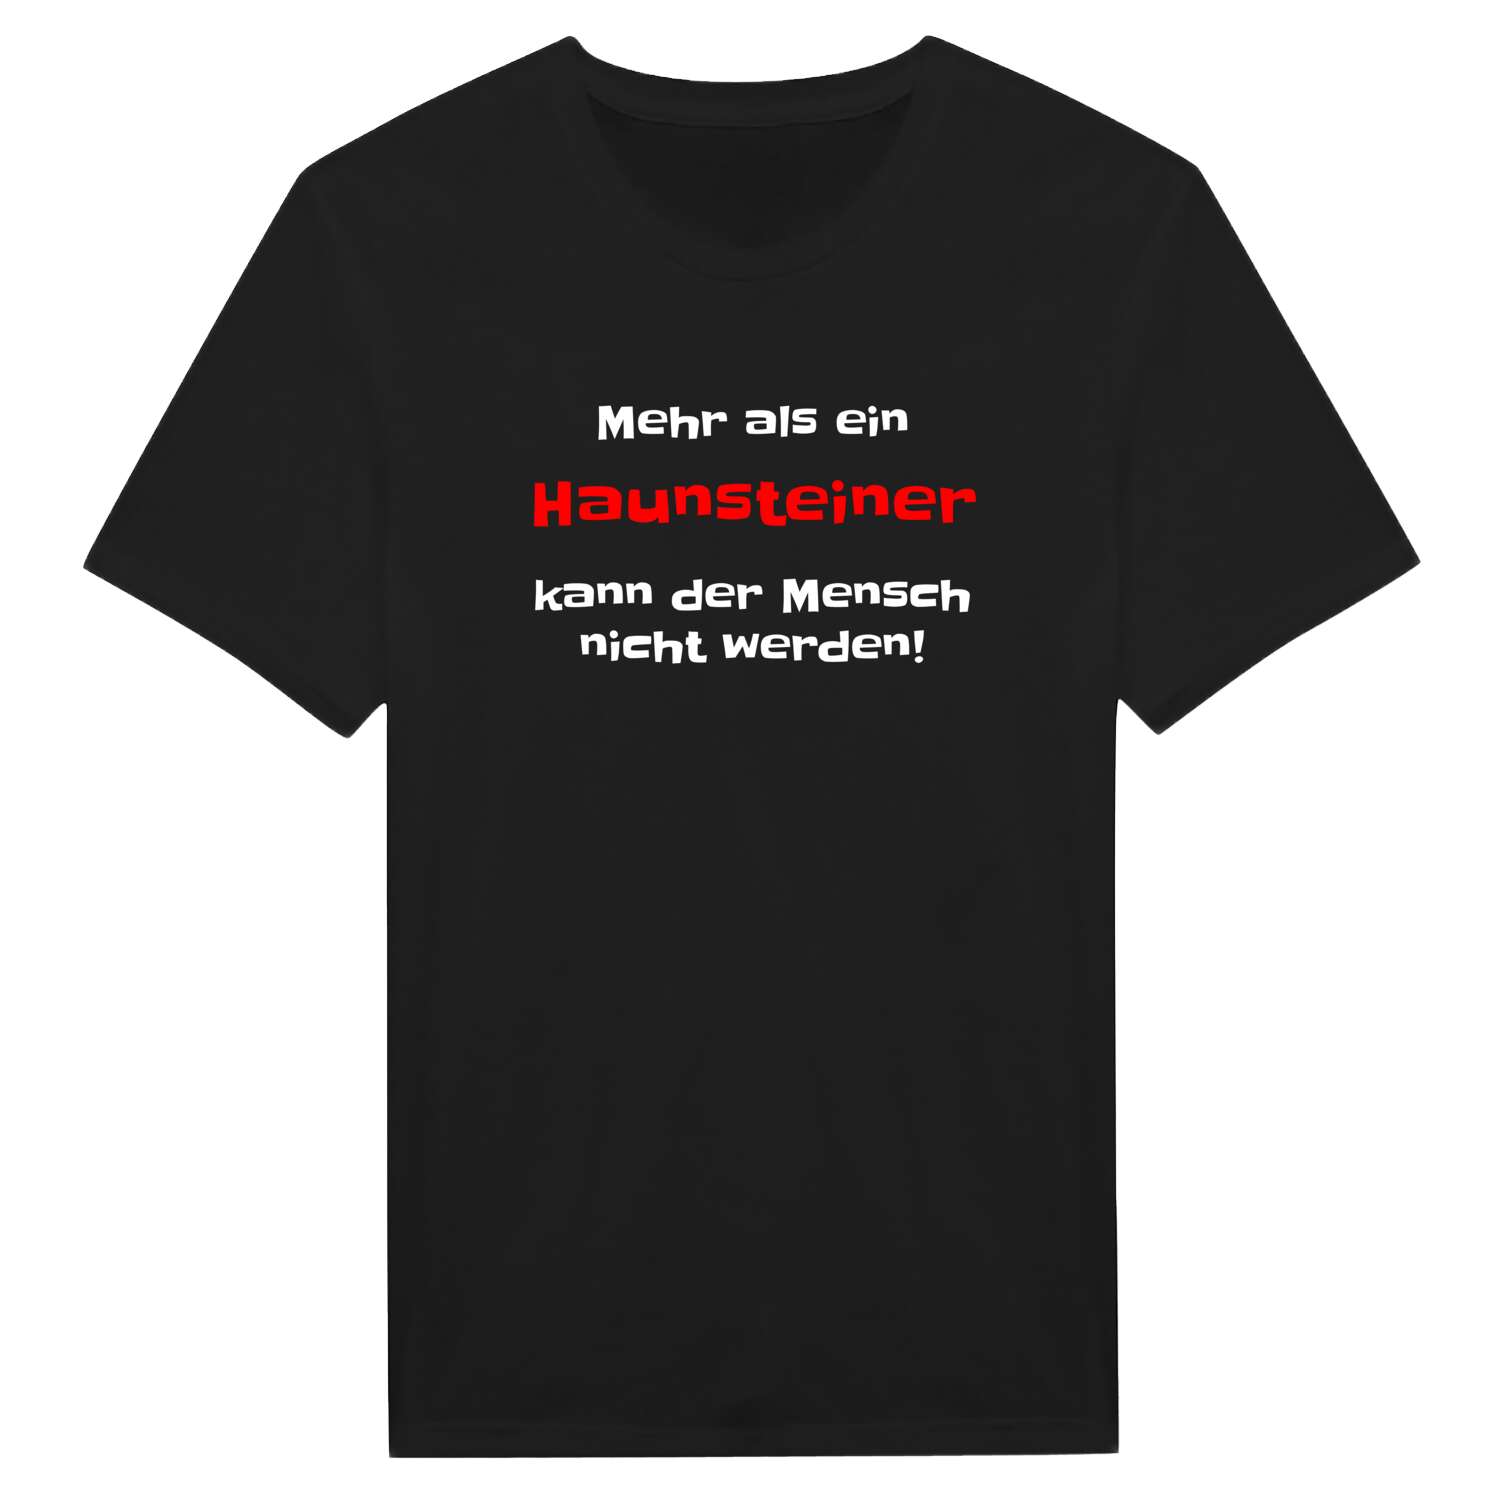 Haunstein T-Shirt »Mehr als ein«